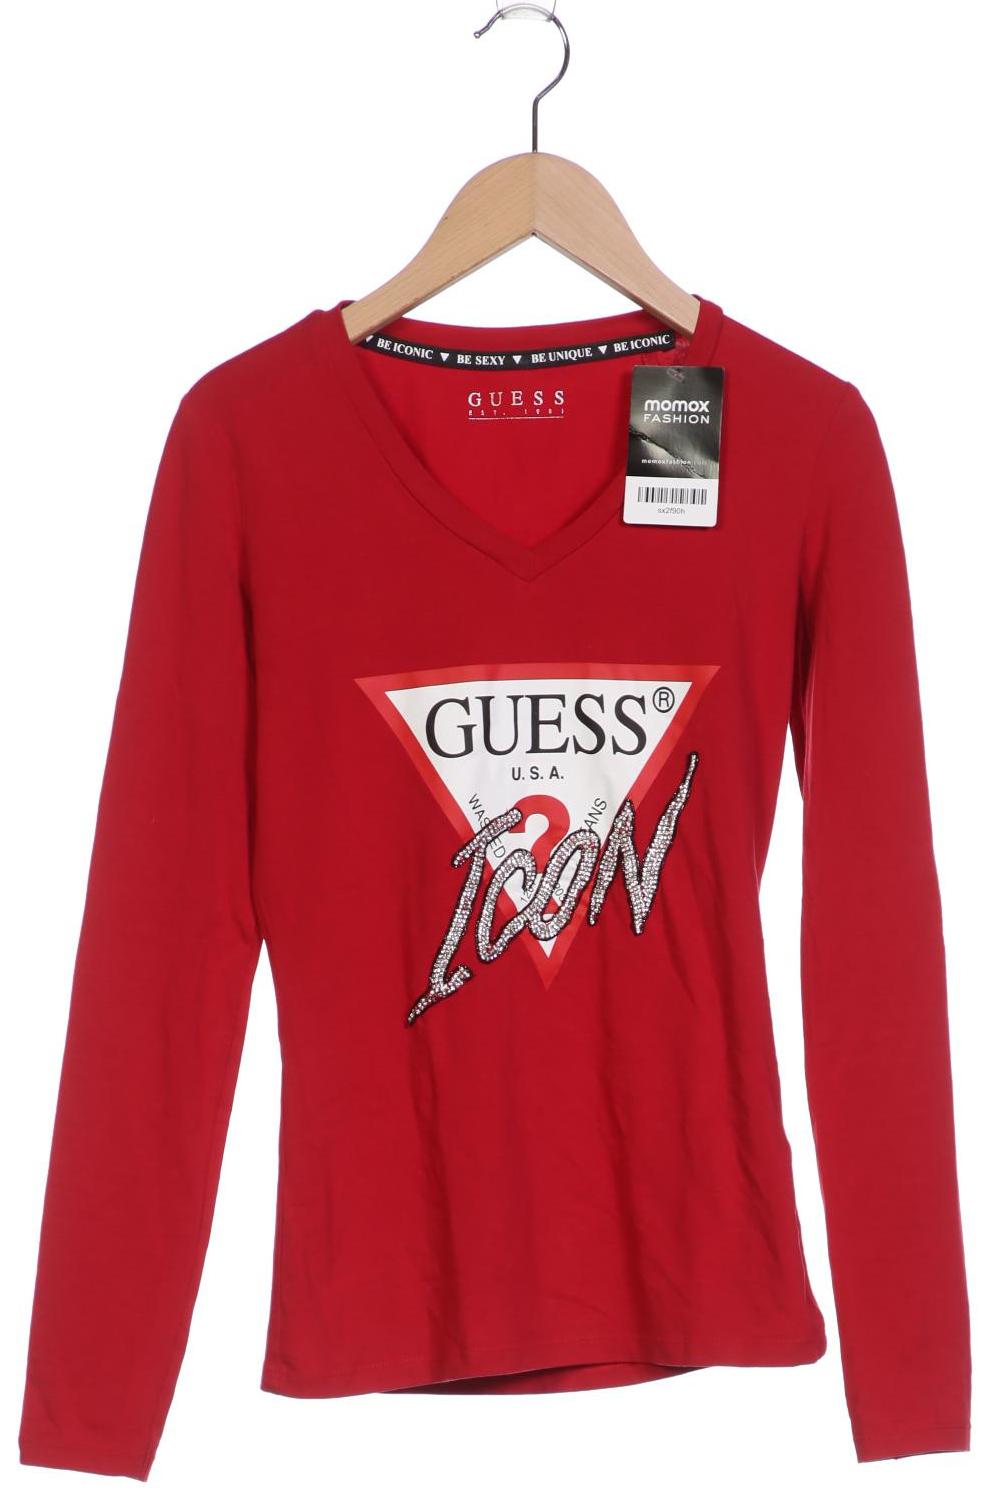 GUESS Damen Langarmshirt, rot von Guess